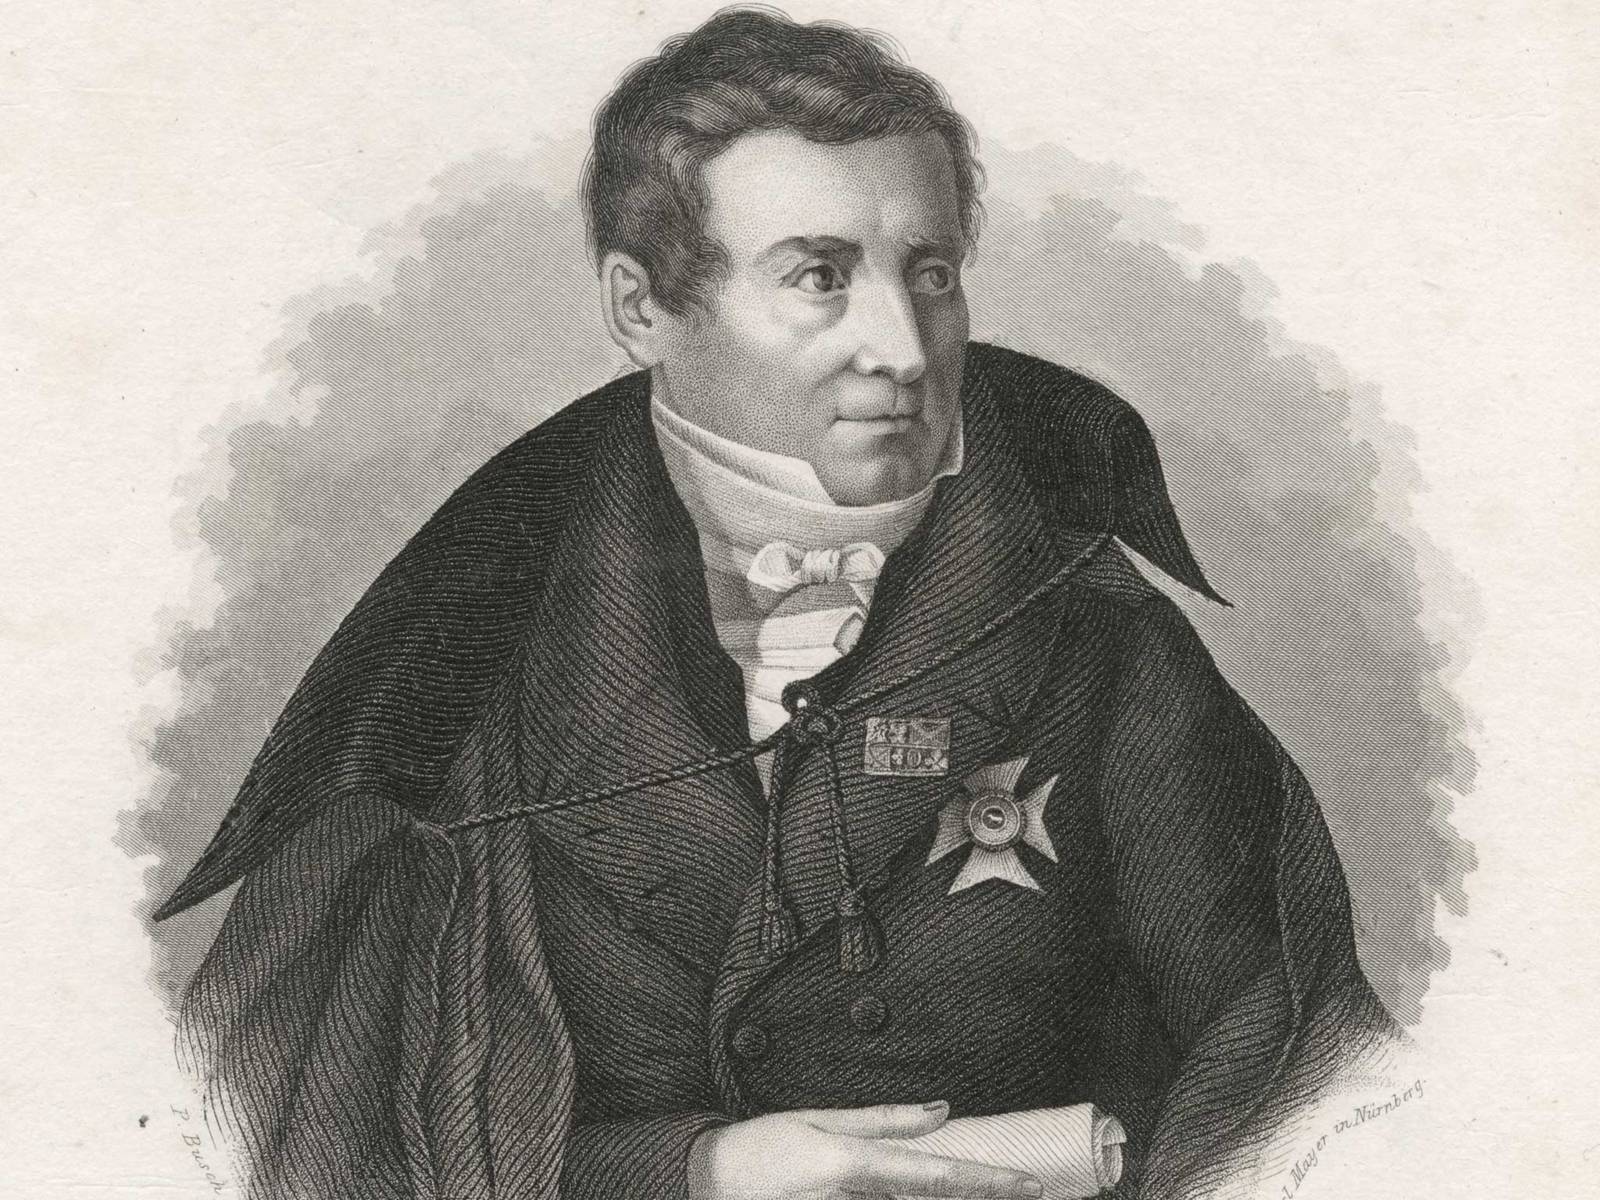 Porträt von August Wilhelm Schlegel, der eine Auszeichnung am Revers trägt und in der rechten Hand eine Papierrolle hält